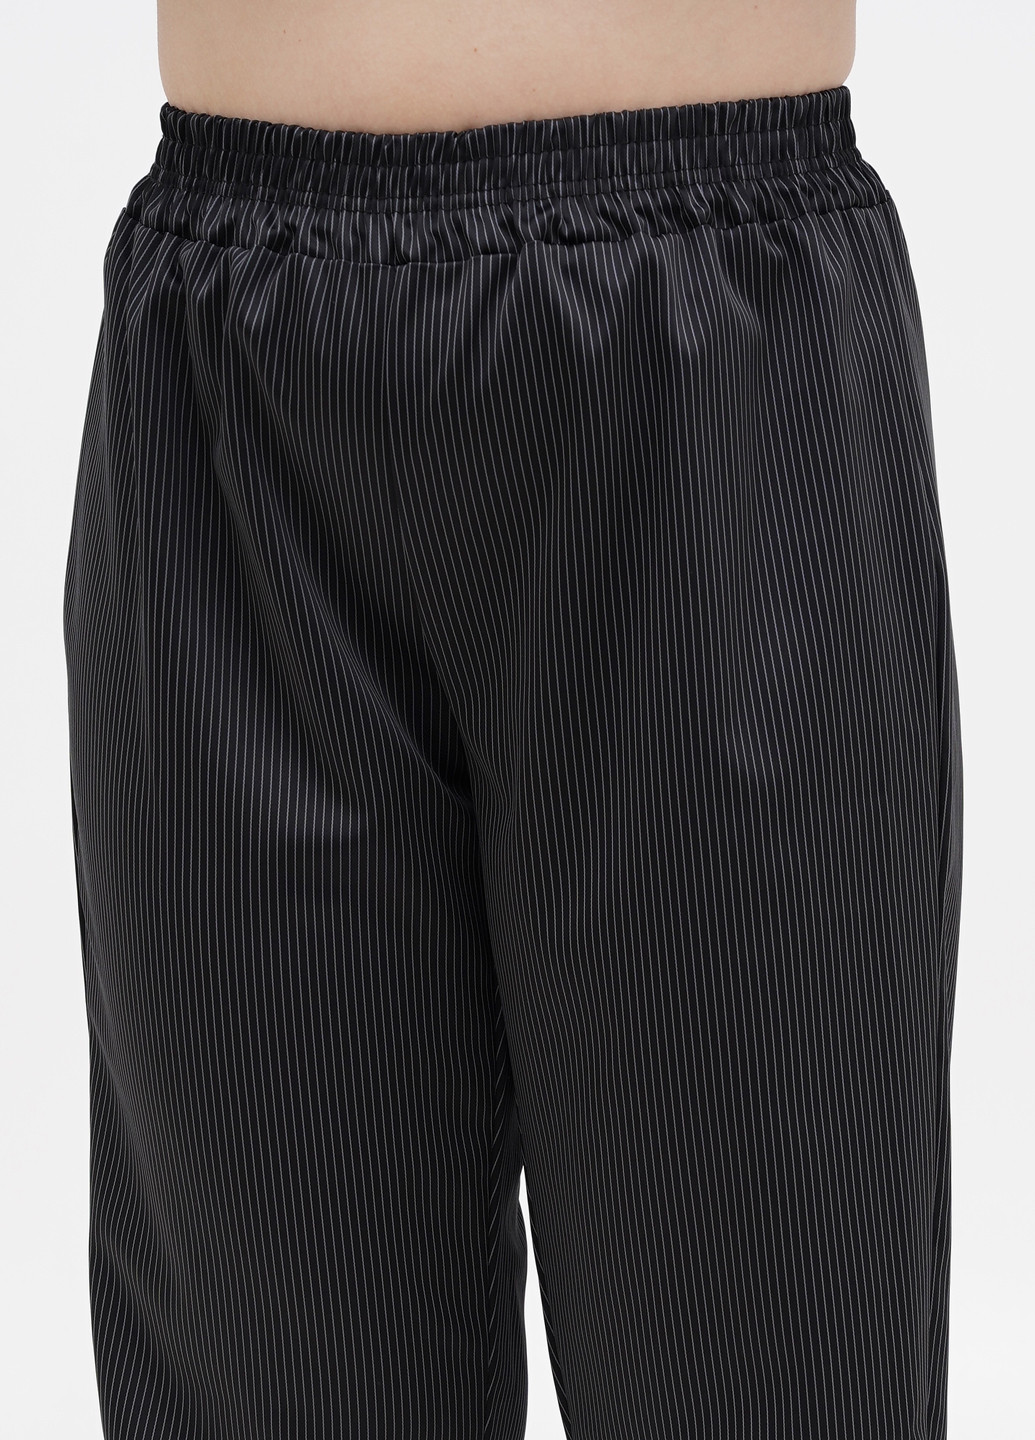 Черная всесезон пижама (рубашка, брюки) рубашка + брюки Radda